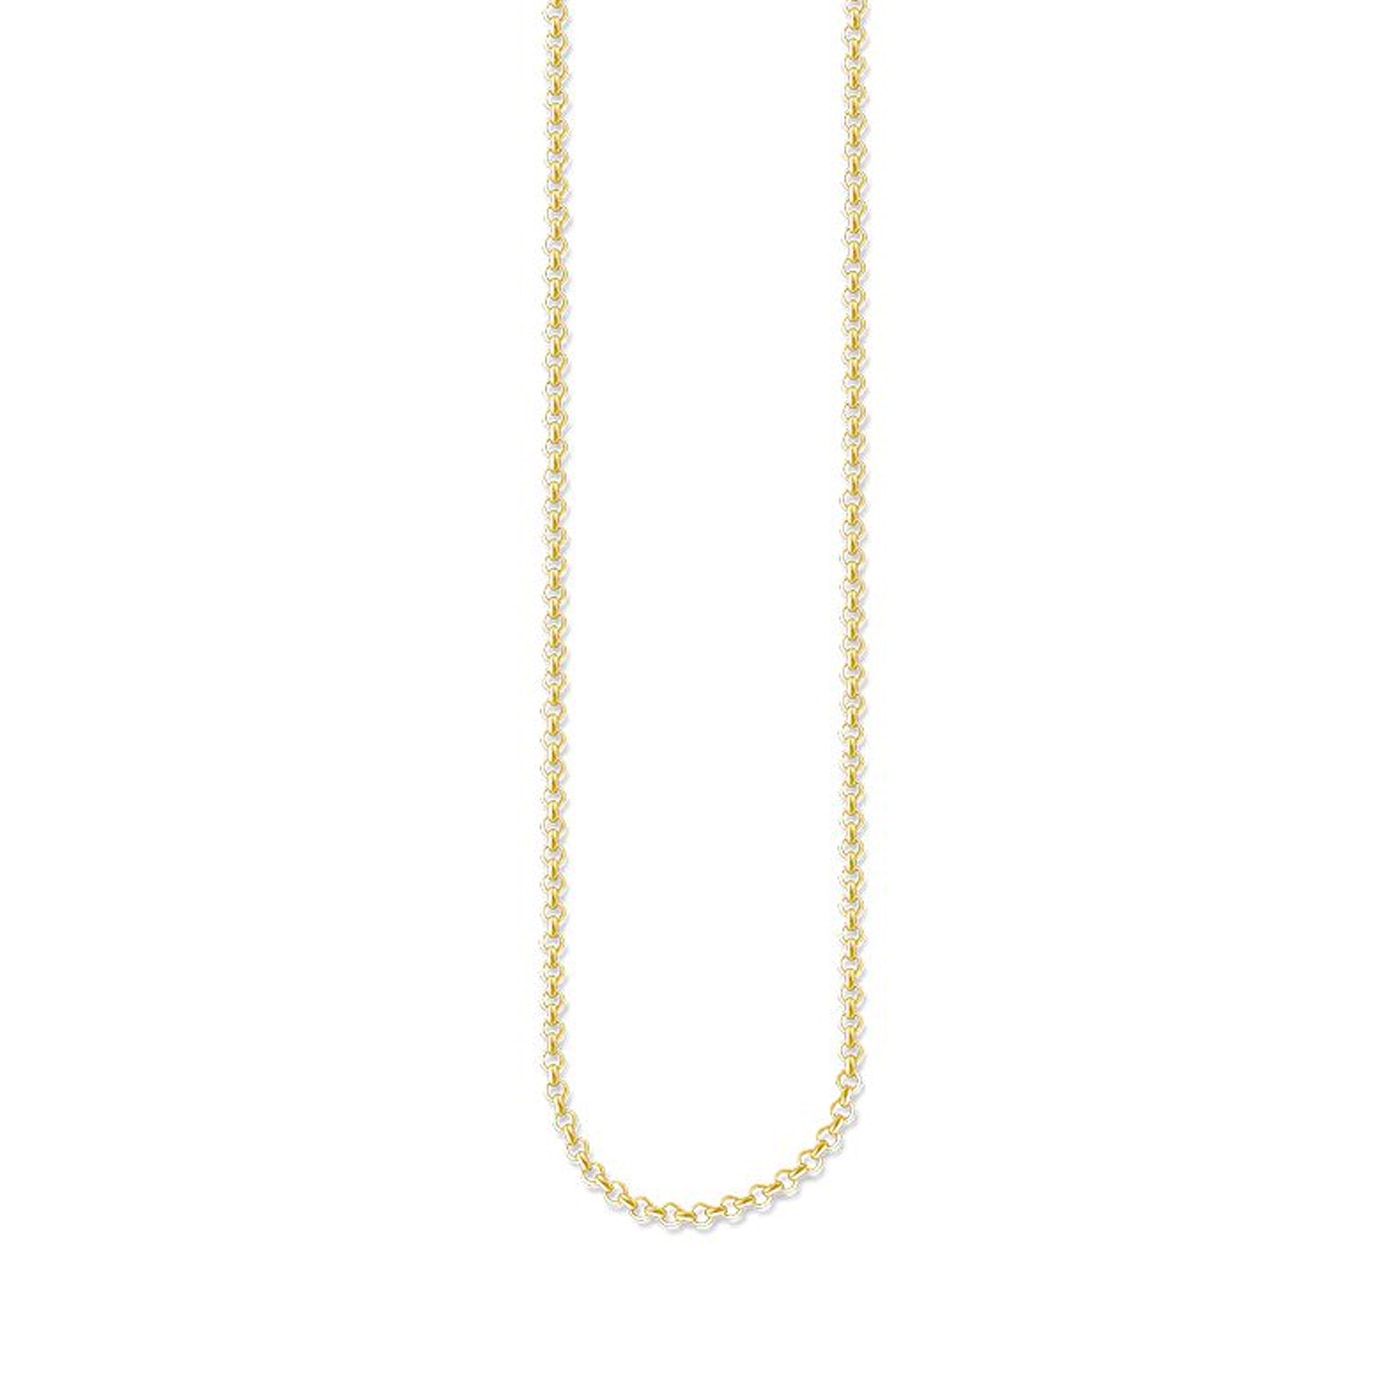 necklace appr. 45 cm